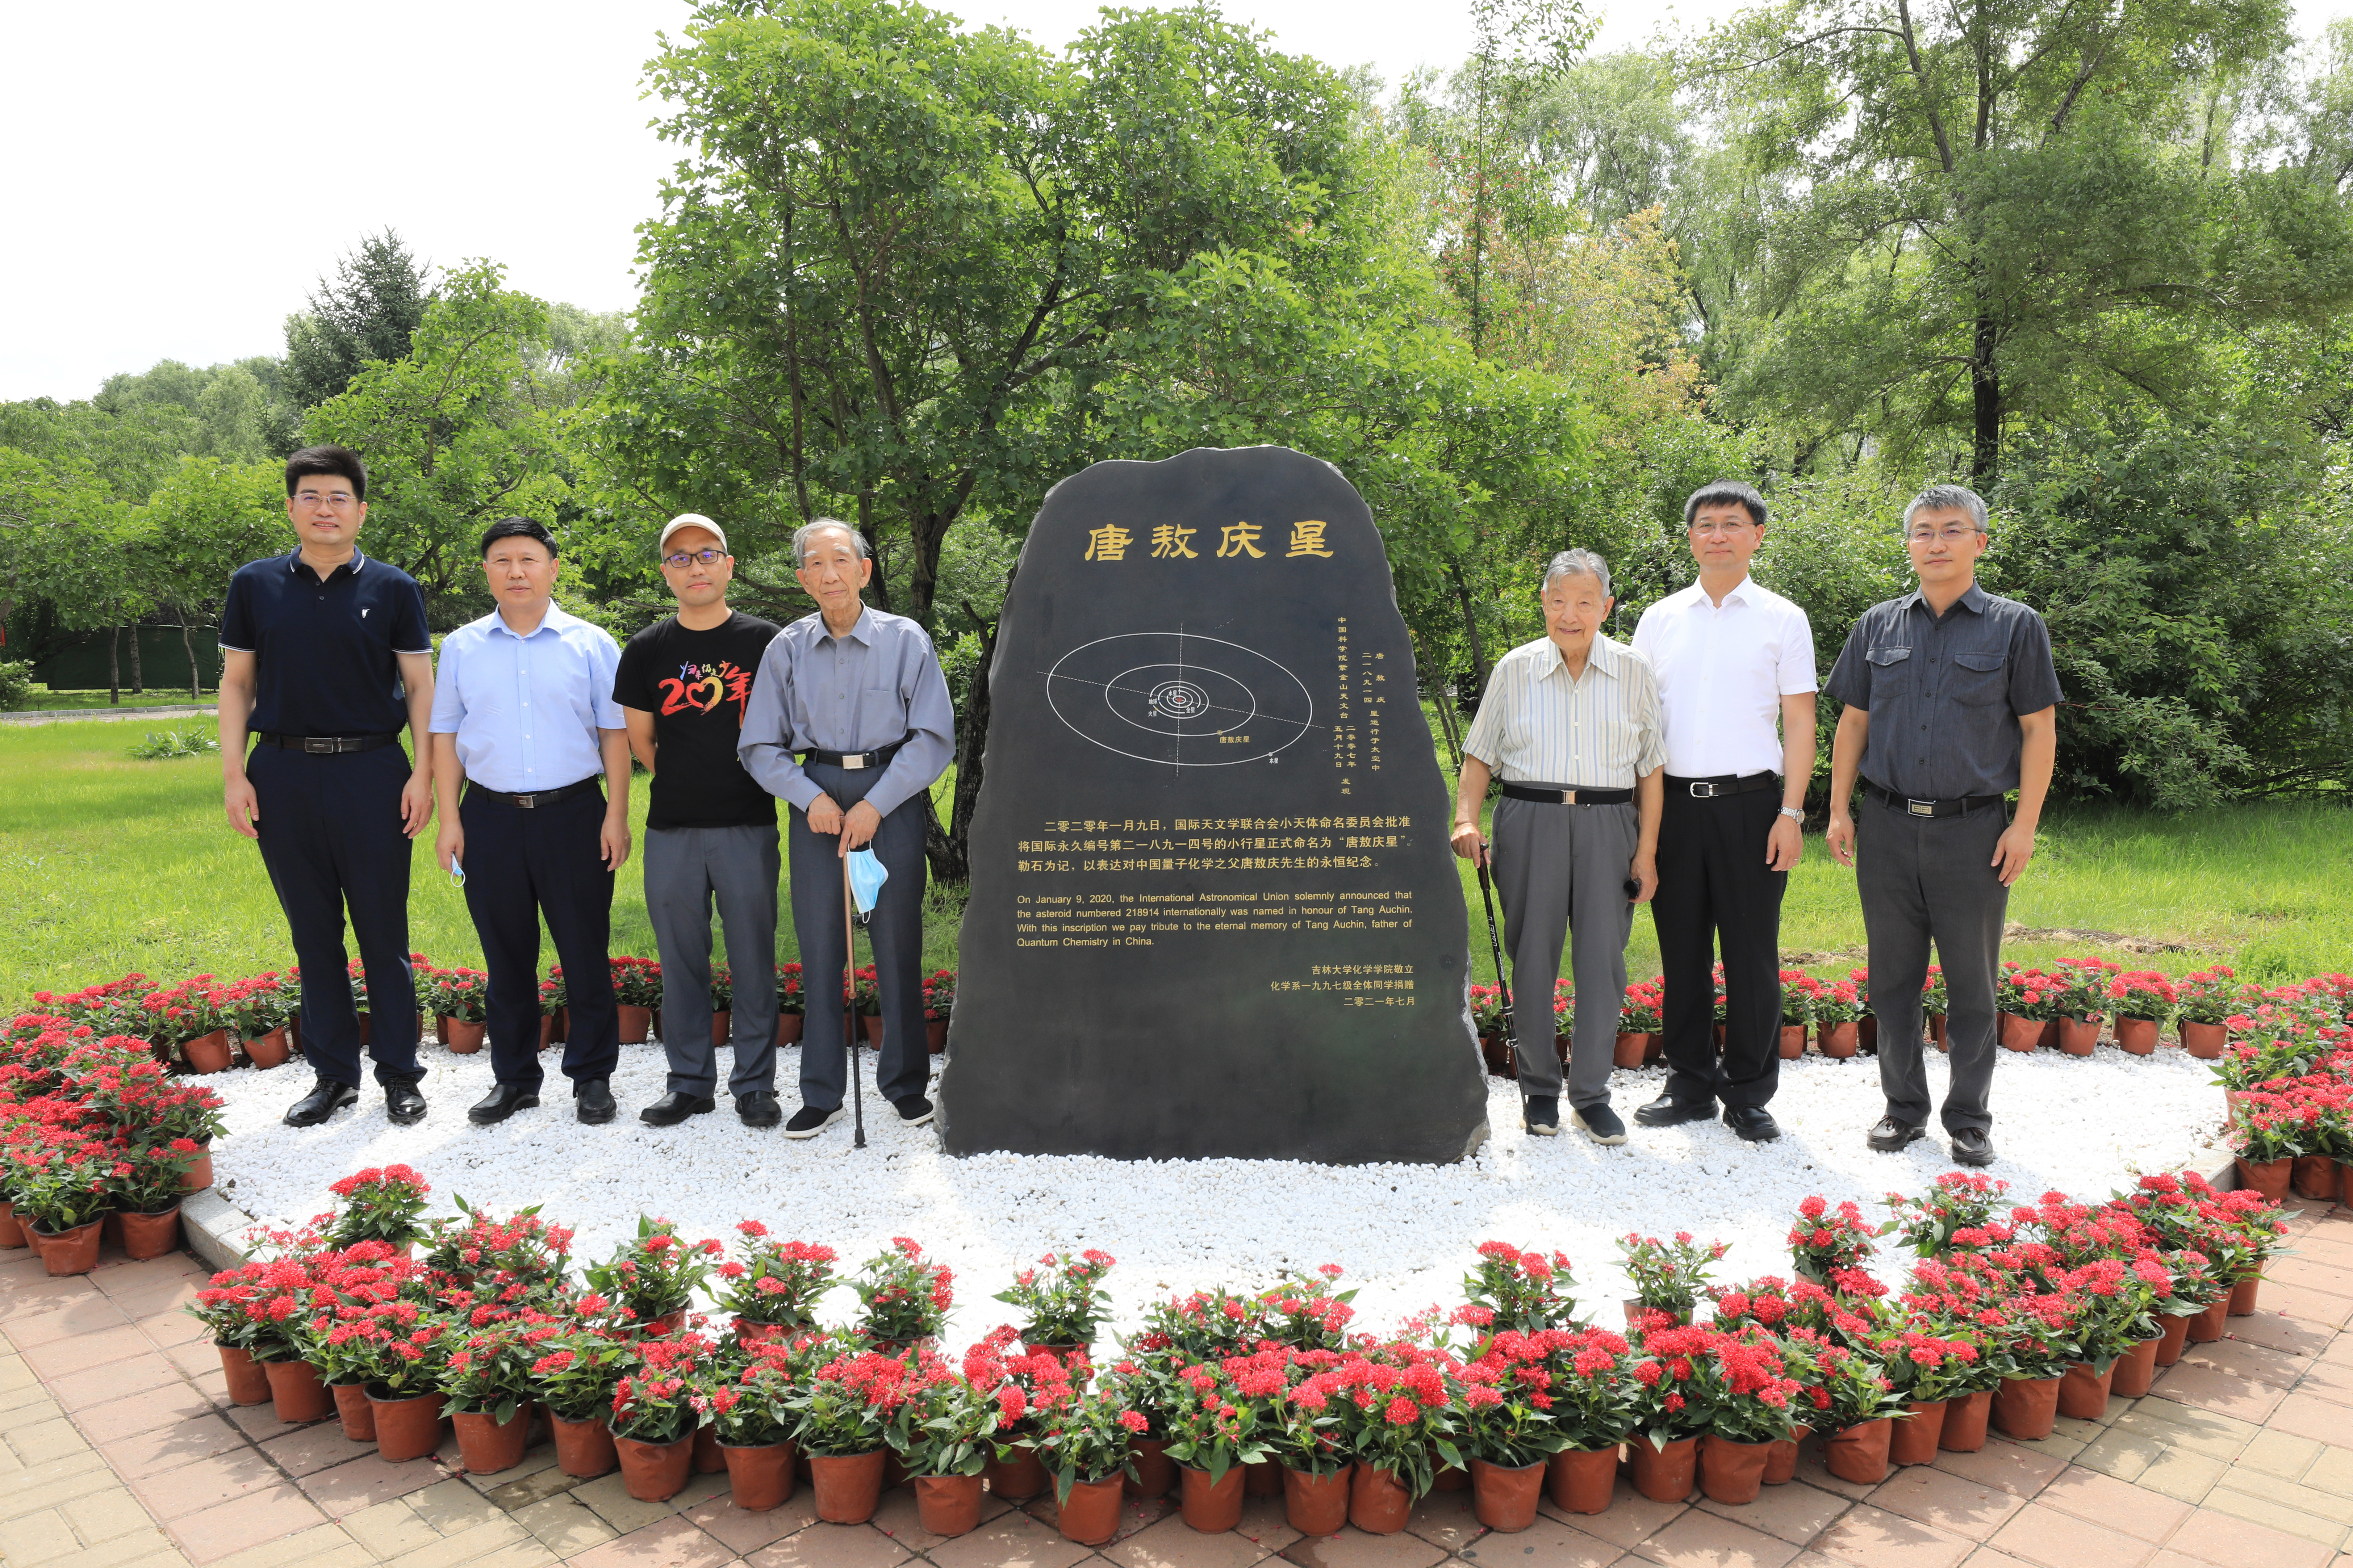 吉林大学化学学院举行“唐敖庆星纪念石”揭幕仪式